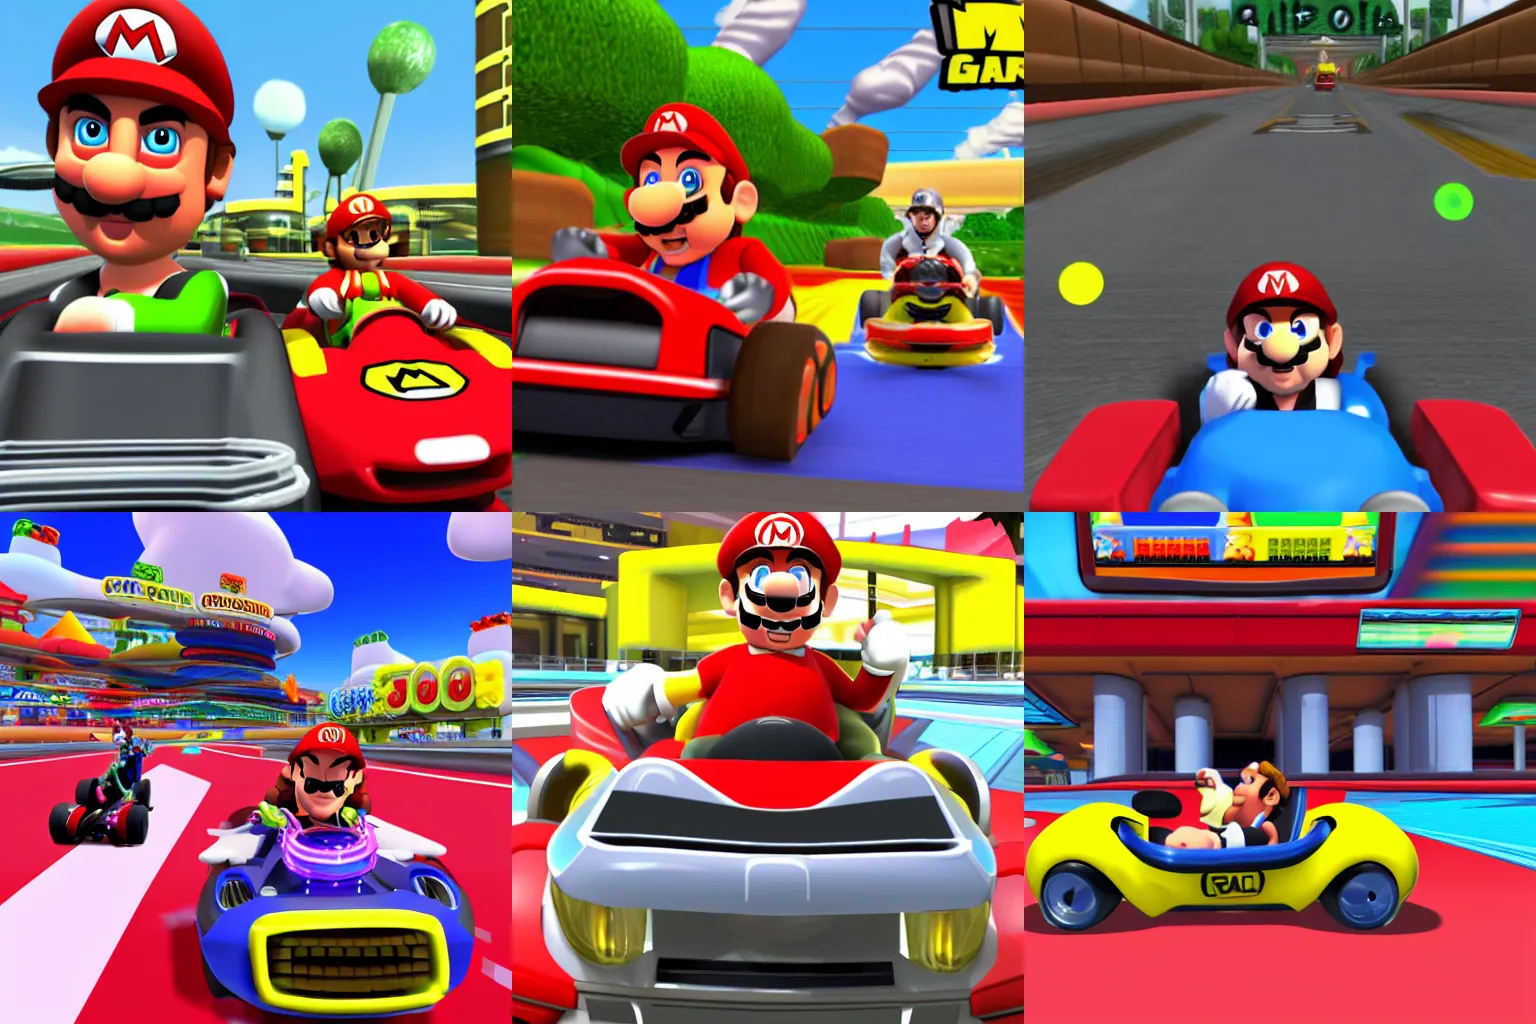 Prompt: Saul Goodman in Mario Kart, game screenshot